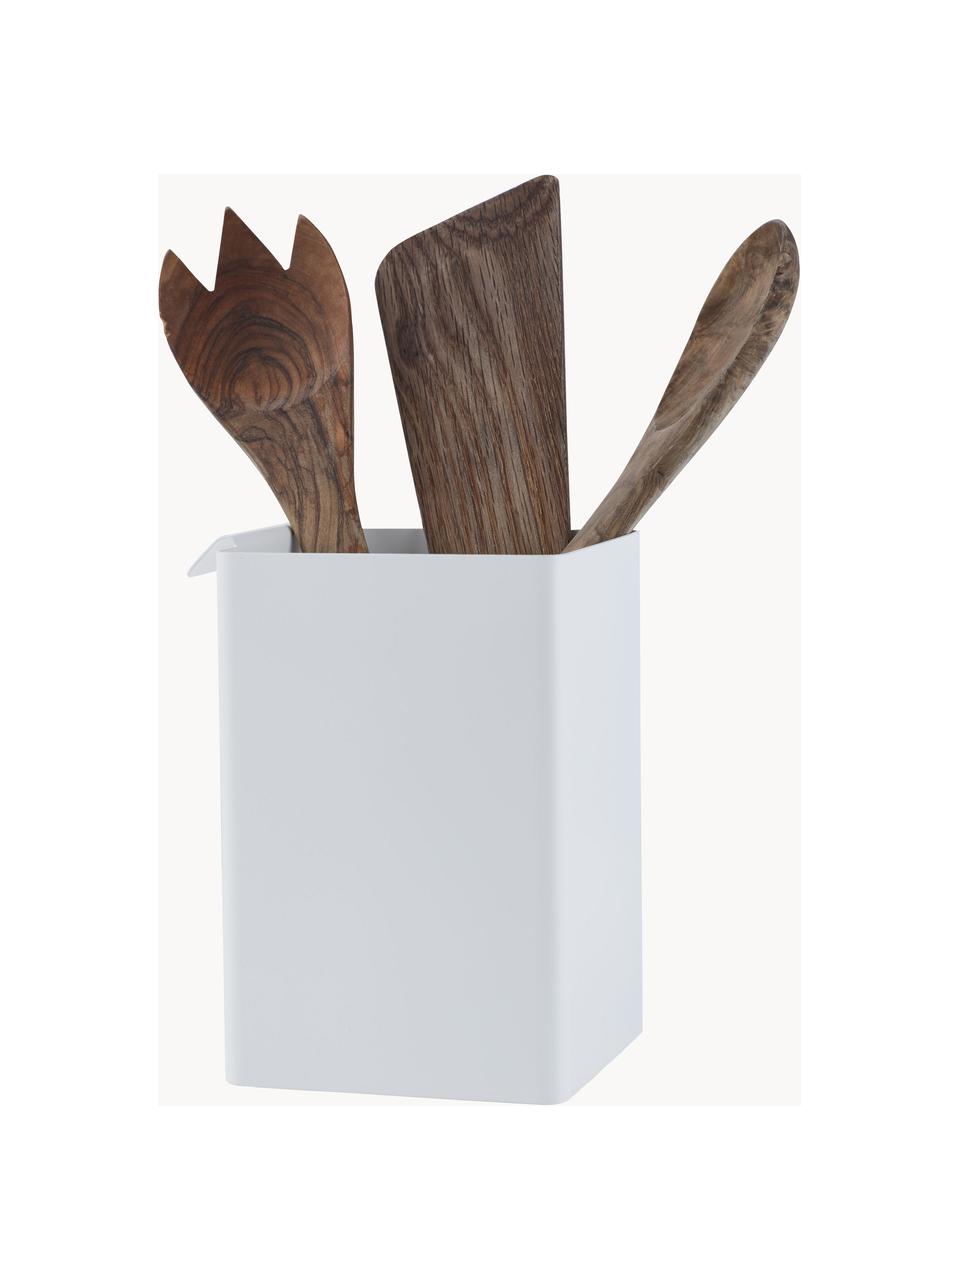 Stahl-Küchenaufbewahrungsbox Flex, Stahl, beschichtet, Weiss, B 11 x H 16 cm